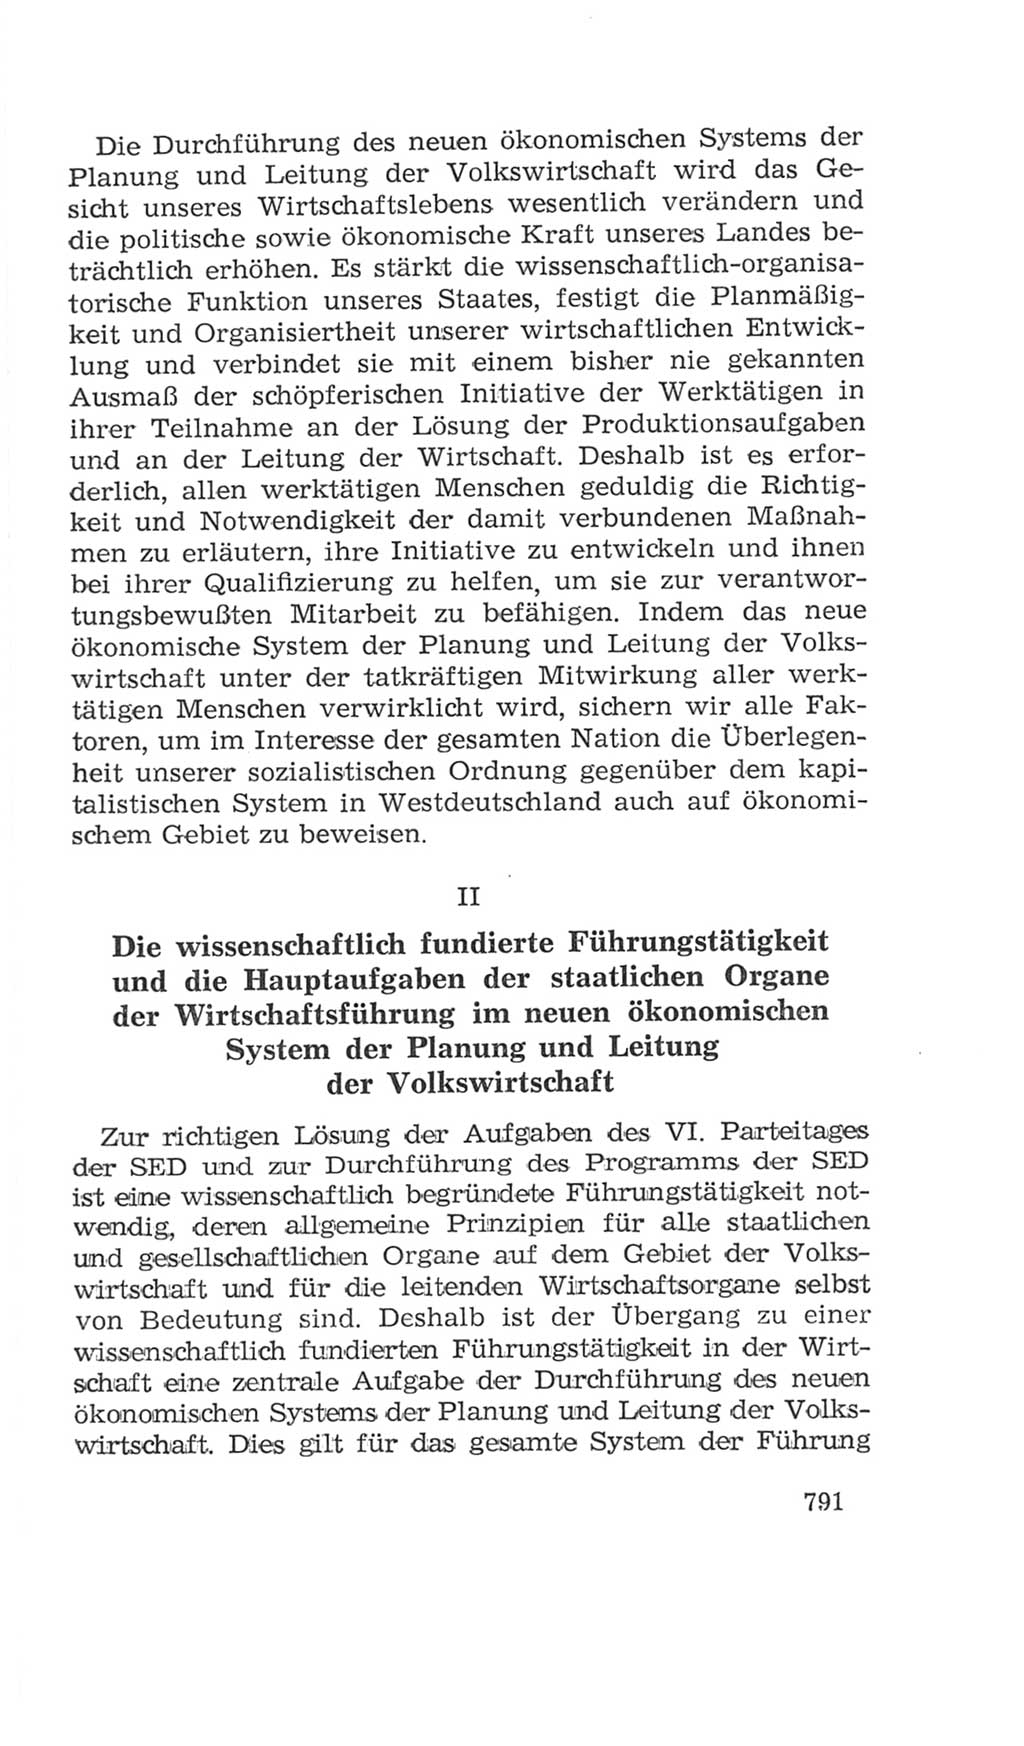 Volkskammer (VK) der Deutschen Demokratischen Republik (DDR), 4. Wahlperiode 1963-1967, Seite 791 (VK. DDR 4. WP. 1963-1967, S. 791)